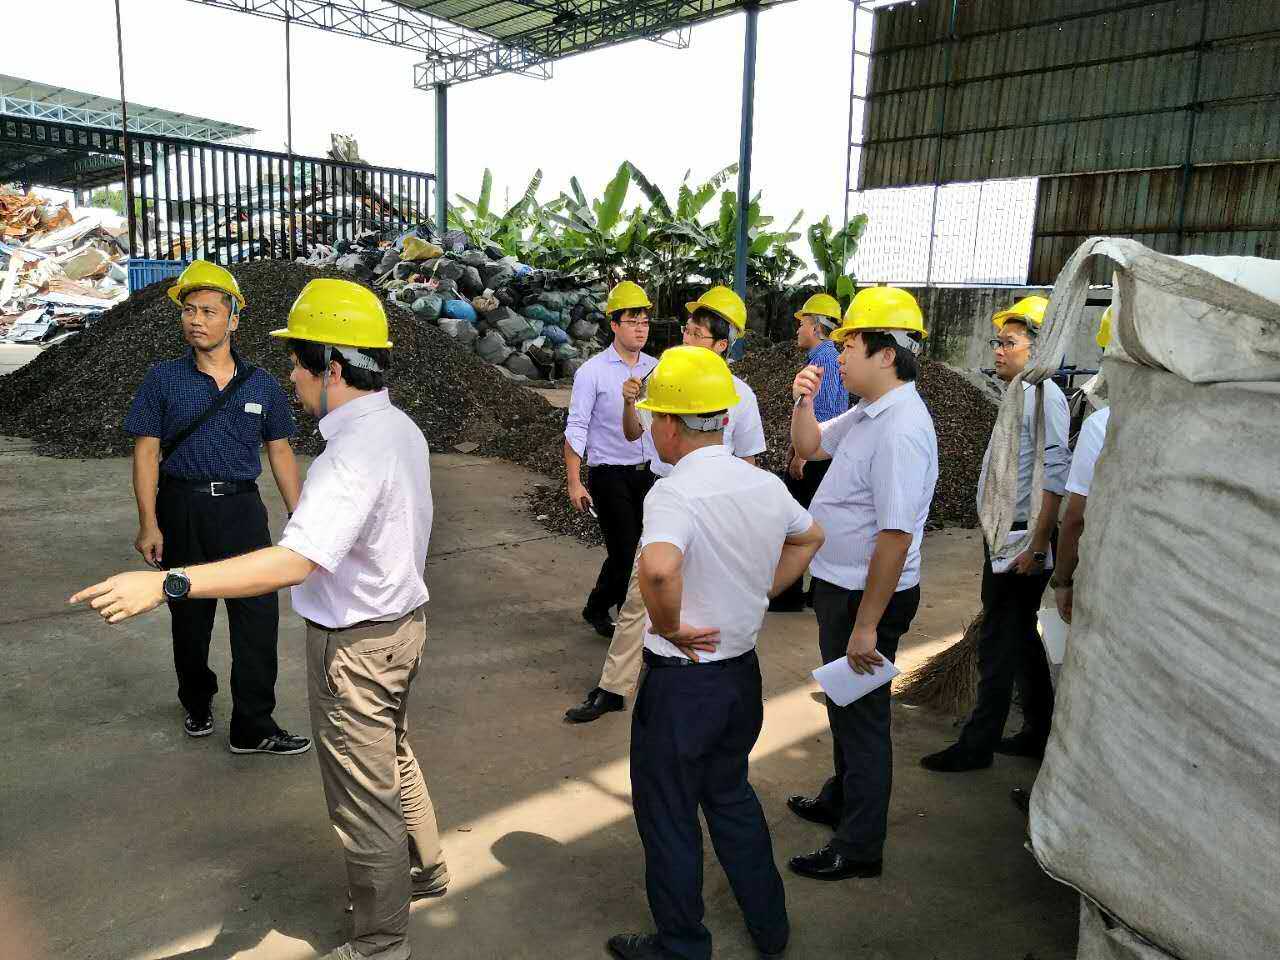 滕高锦向日本代表团介绍废铁回收工艺